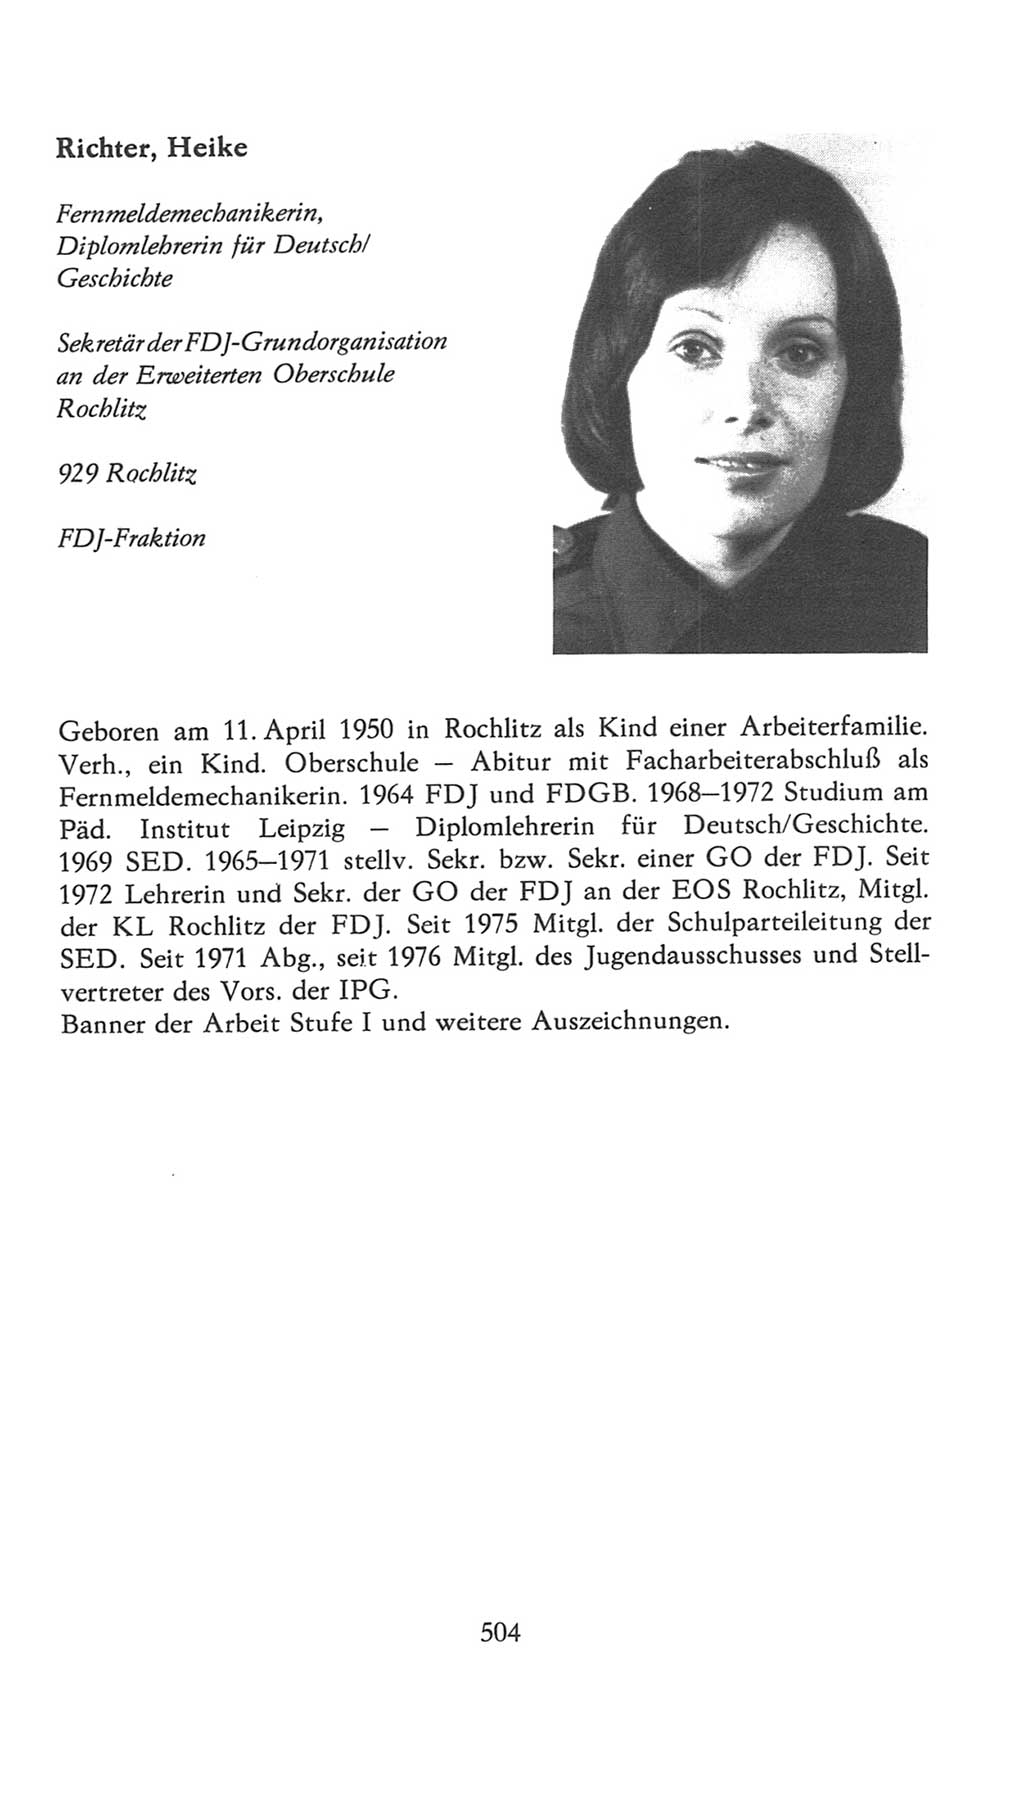 Volkskammer (VK) der Deutschen Demokratischen Republik (DDR), 7. Wahlperiode 1976-1981, Seite 504 (VK. DDR 7. WP. 1976-1981, S. 504)